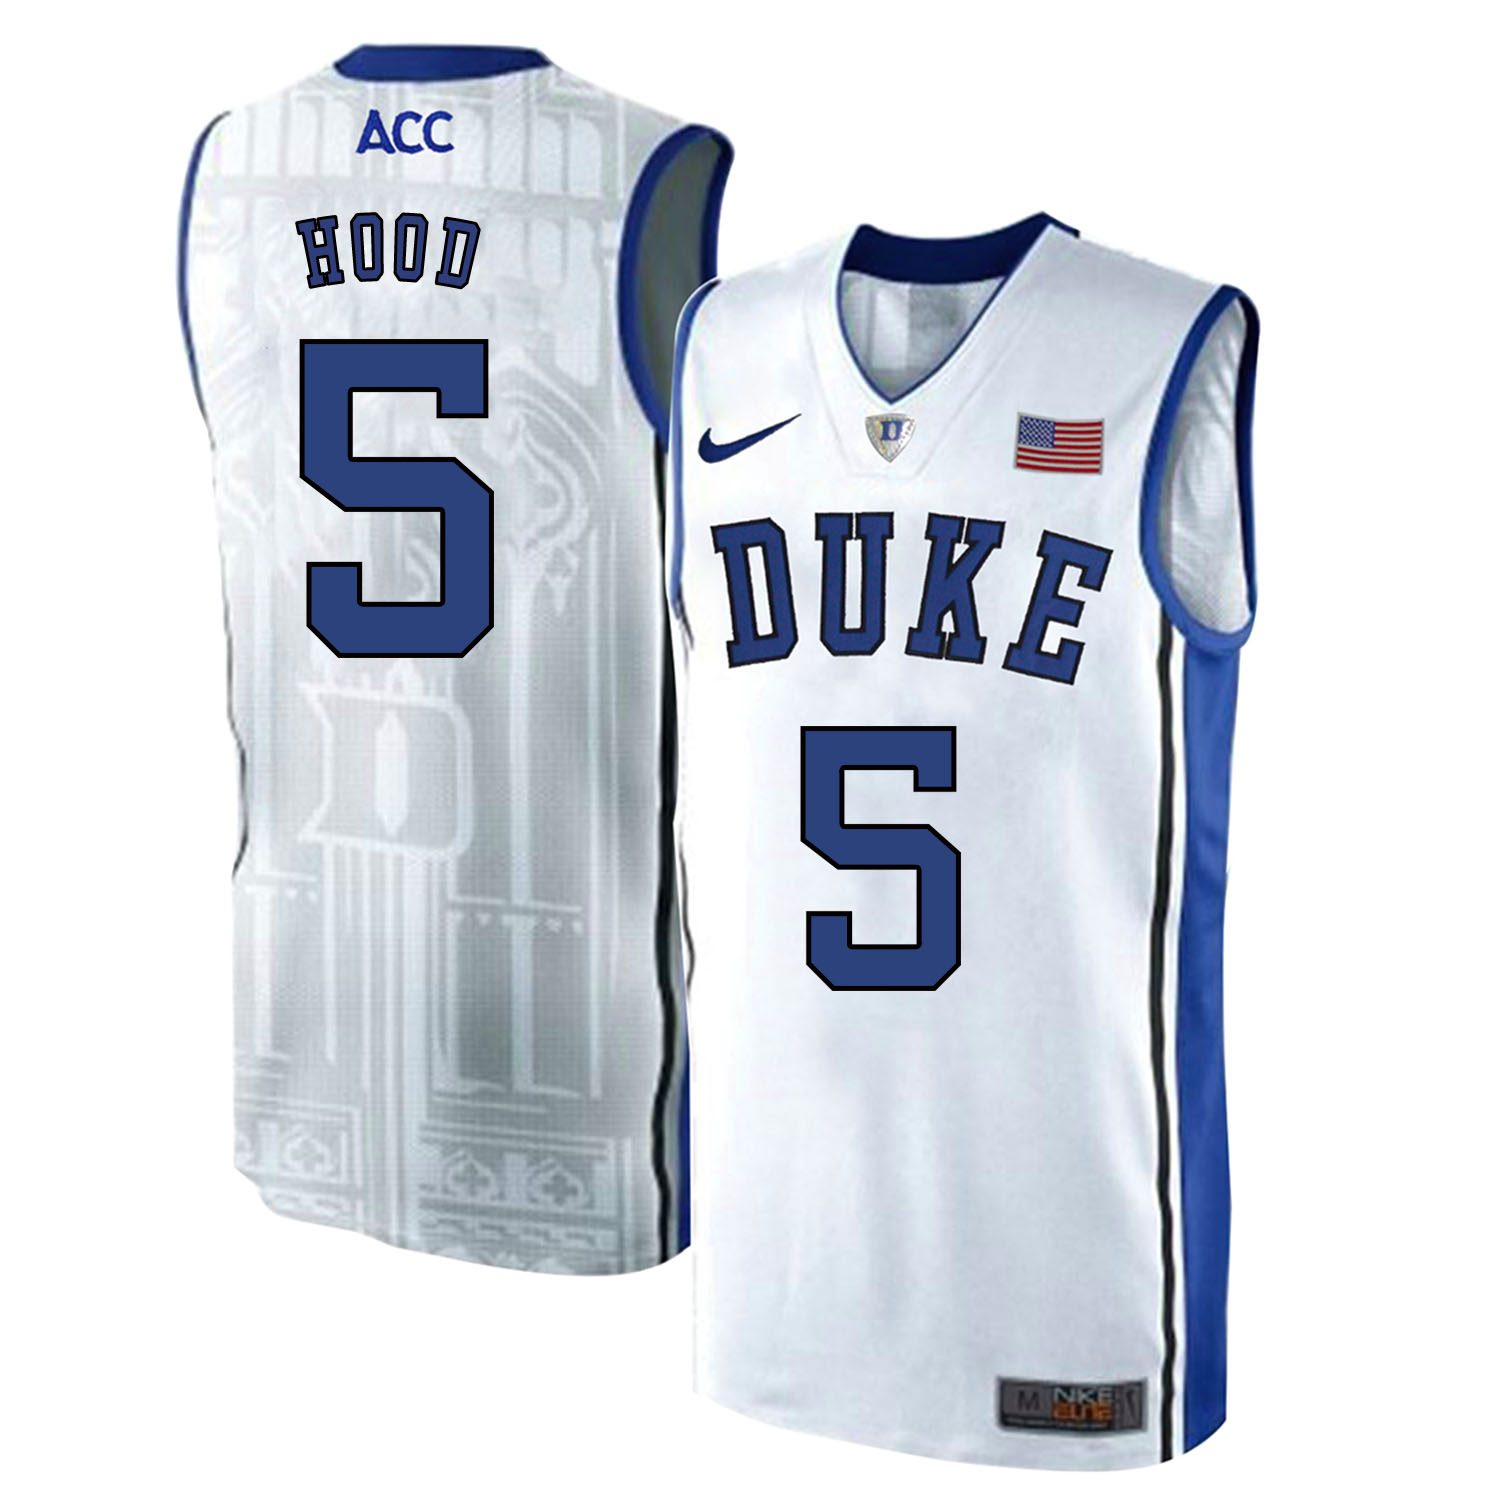 Duke Blue Devils 5 Rodney Hood White Elite Nike College Basketball Jersey